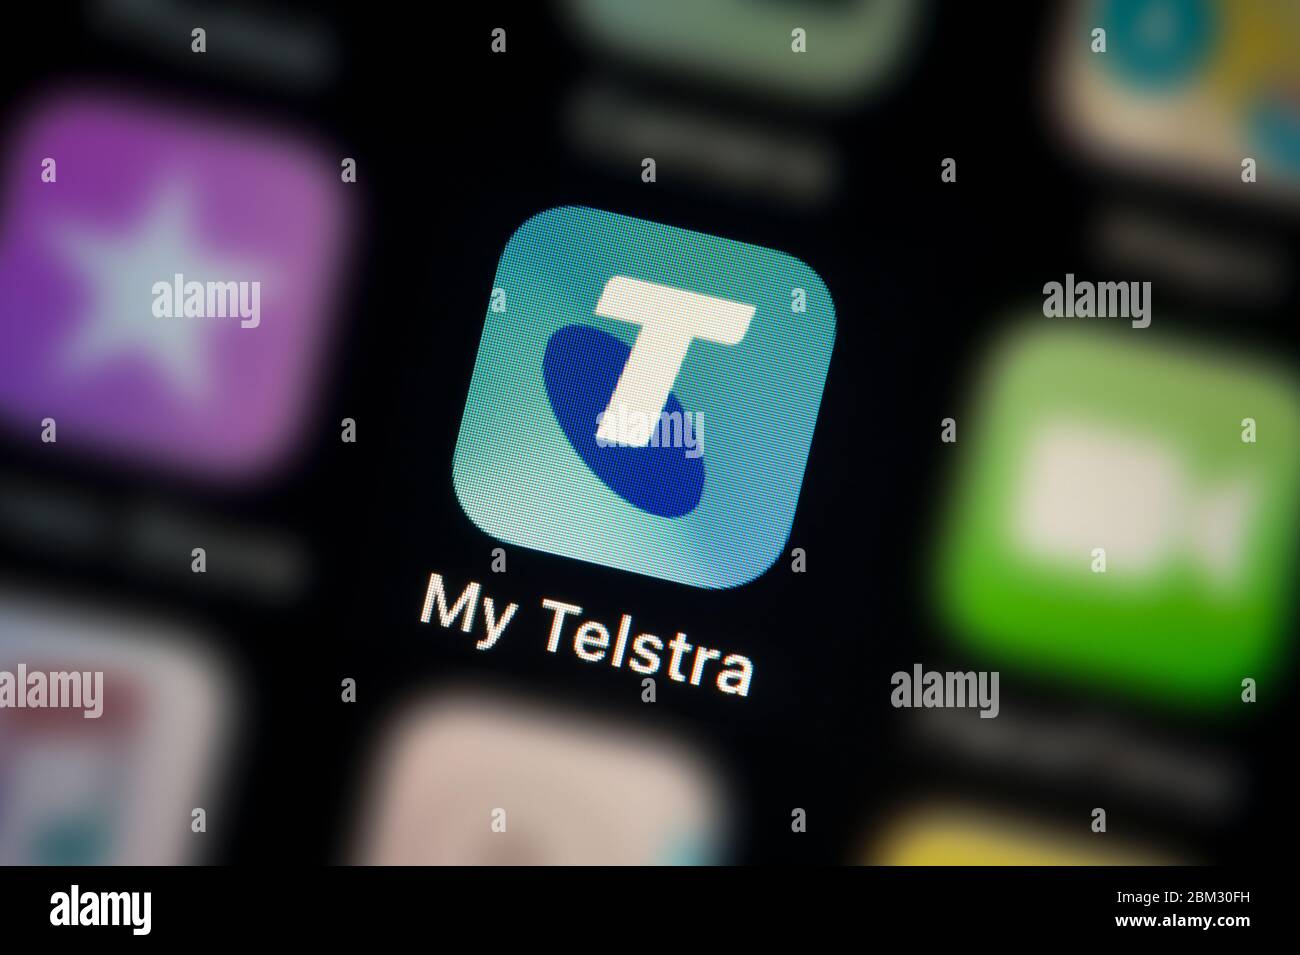 Gros plan de l'icône de l'application Telstra, comme illustré sur l'écran d'un smartphone (usage éditorial uniquement) Banque D'Images